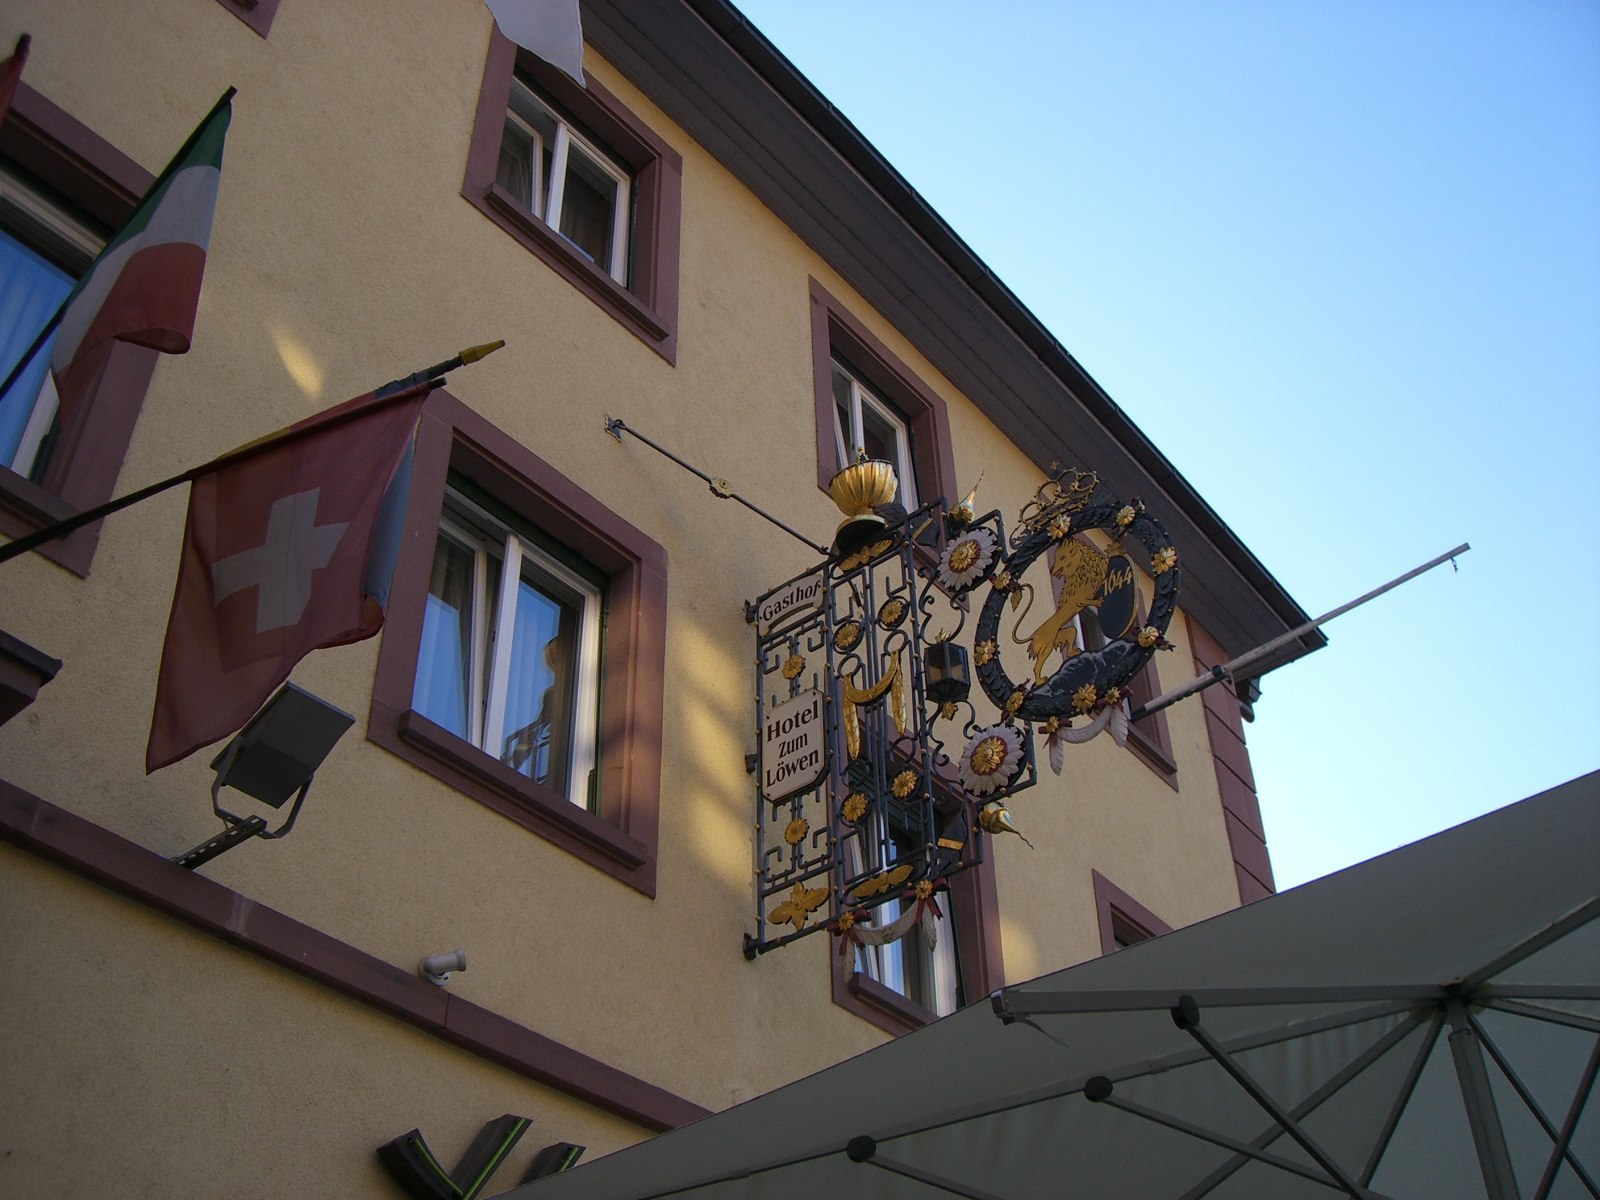 Hotel Zum Löwen